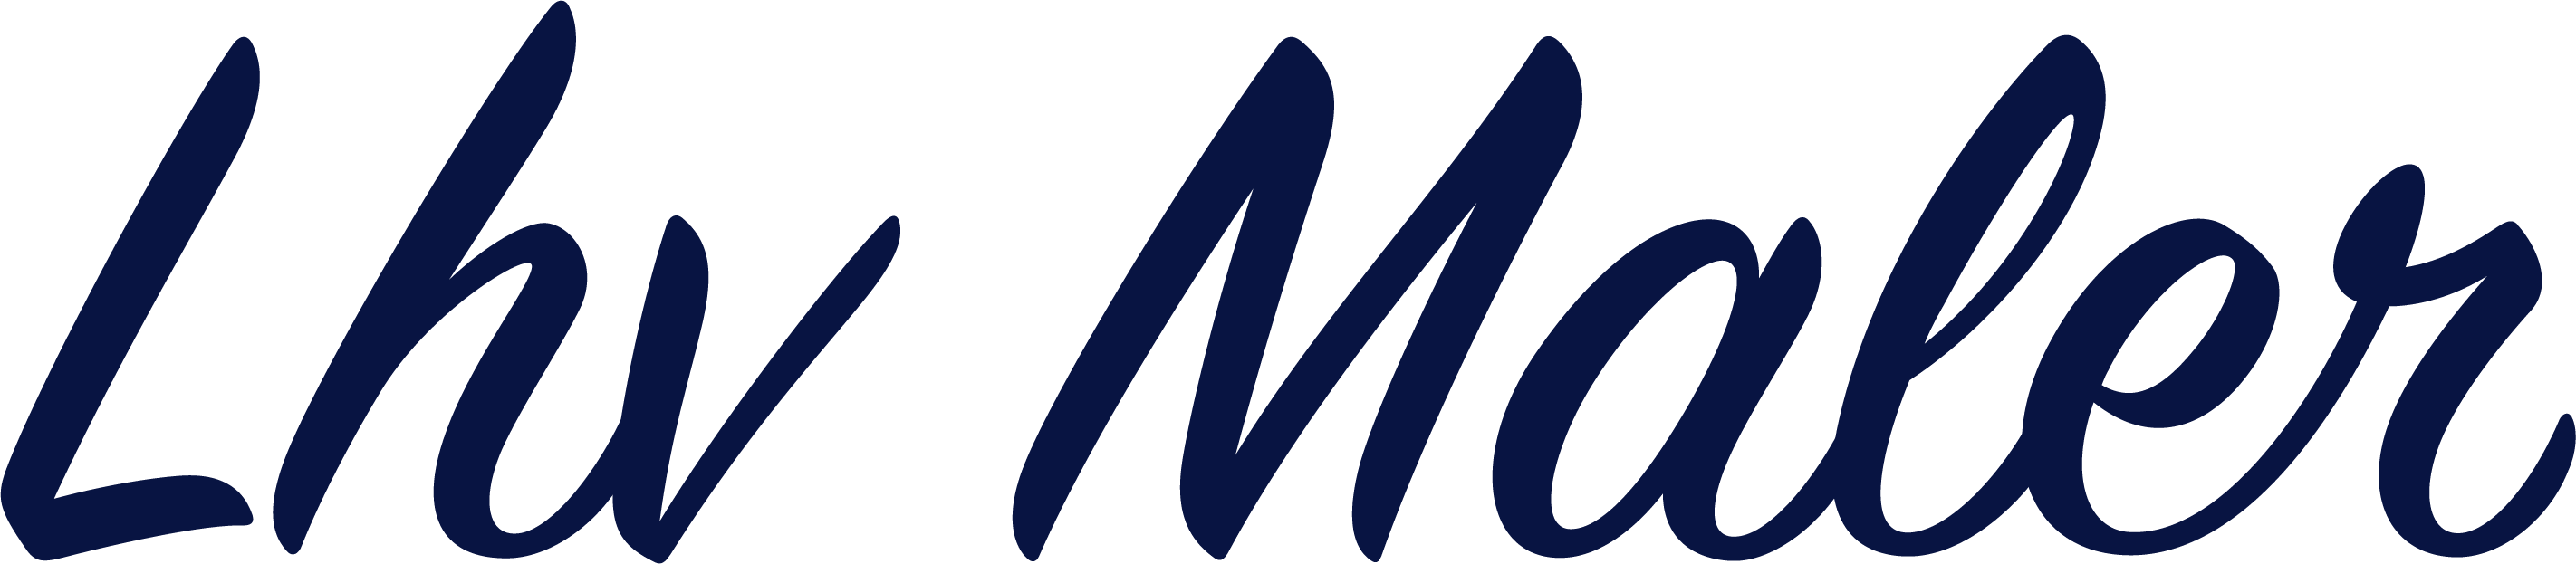 Lhv Maler logo